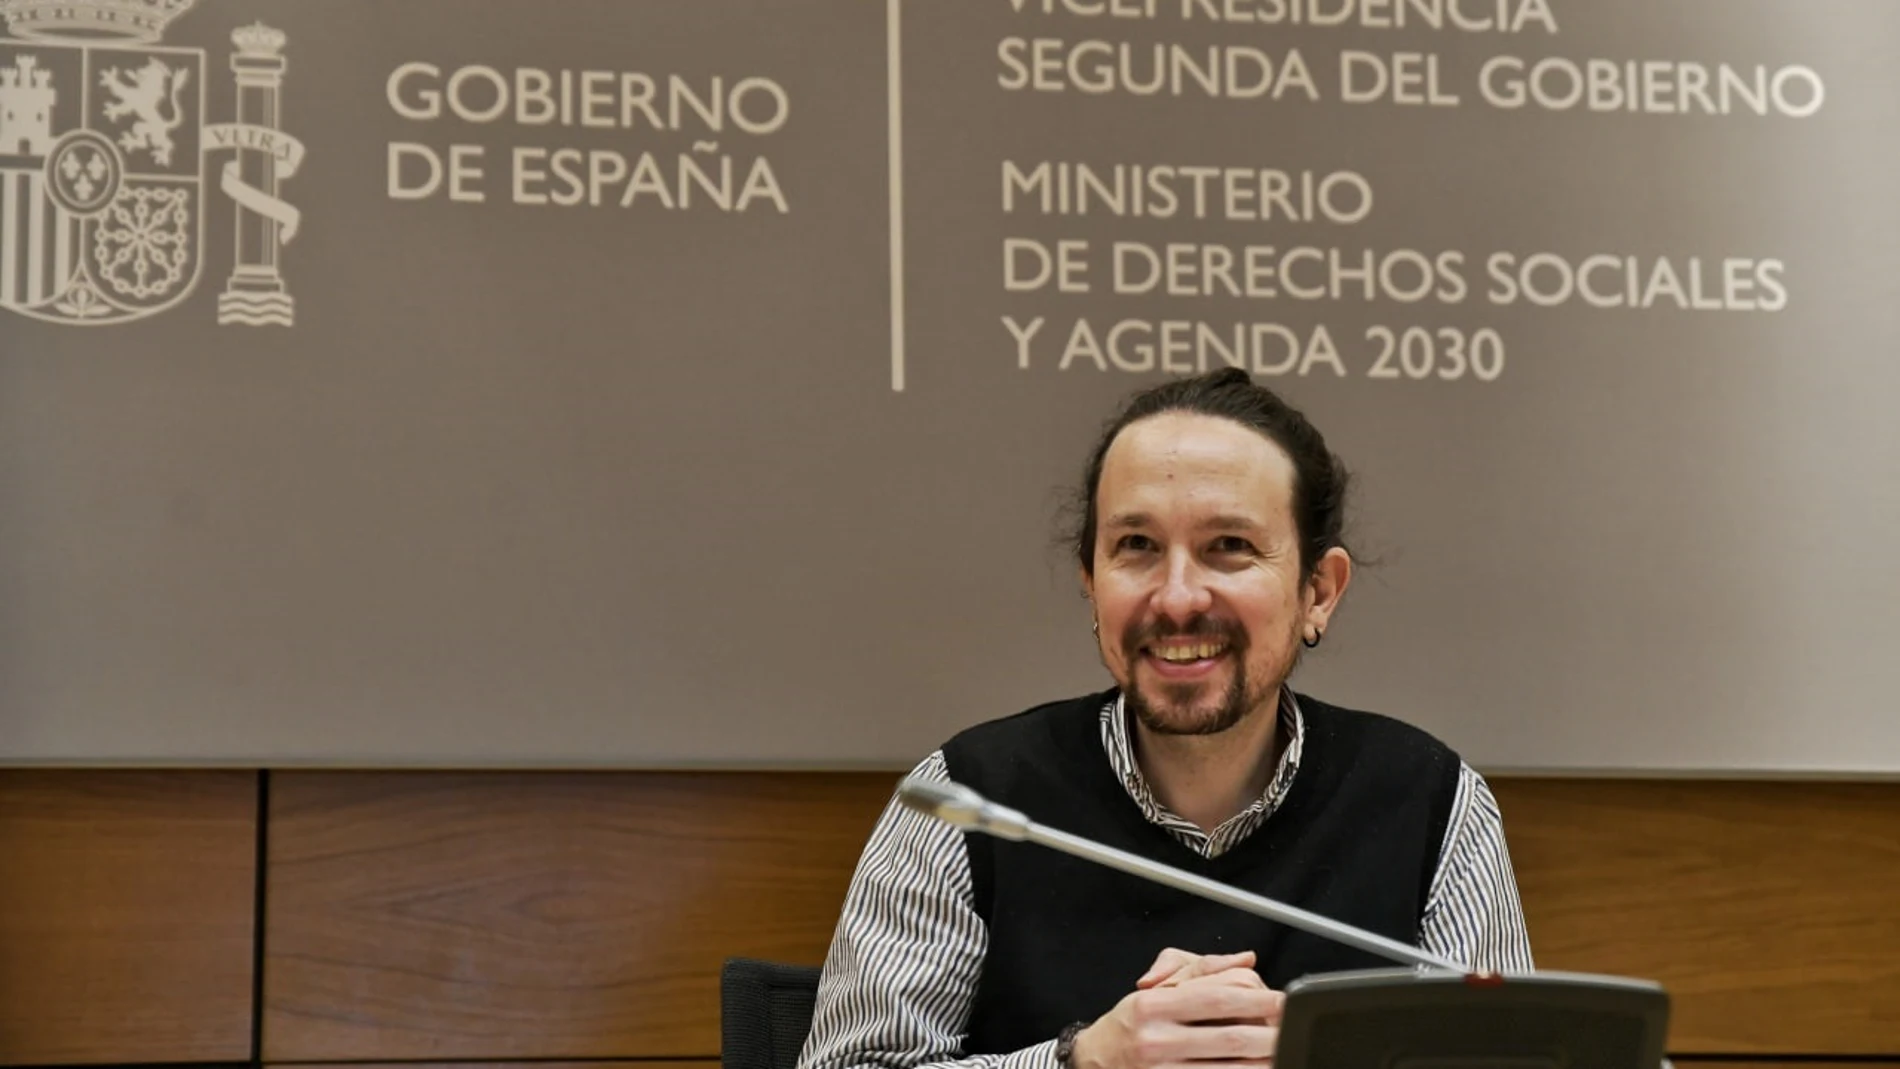 El vicepresidente de Derechos Sociales y Agenda 2030, Pablo IglesiasMINISTERIO DE DERECHOS SOCIALES 25/03/2021